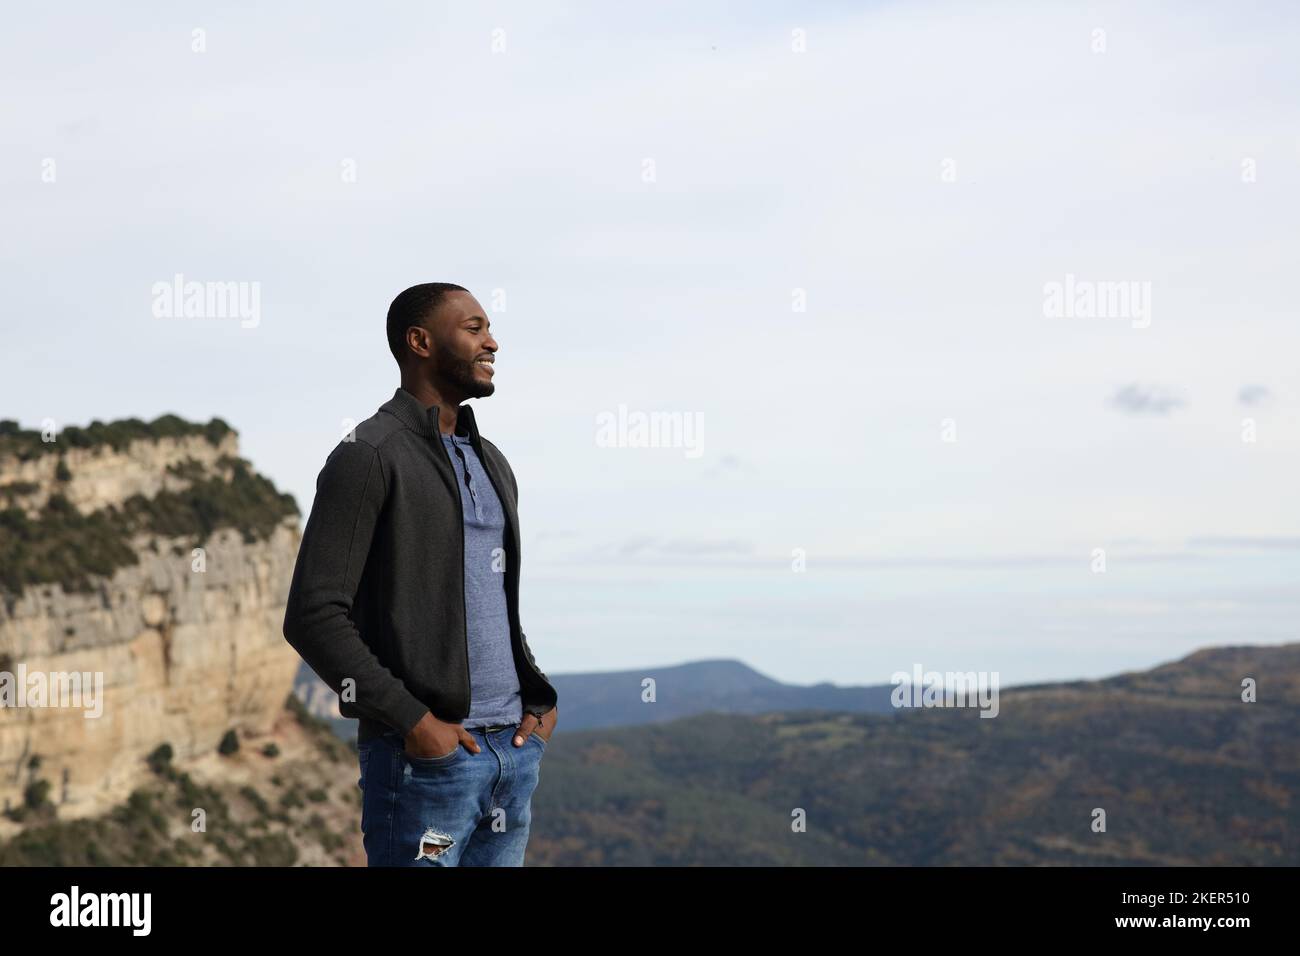 Heureux homme noir contemplant la nature debout dans la montagne Banque D'Images